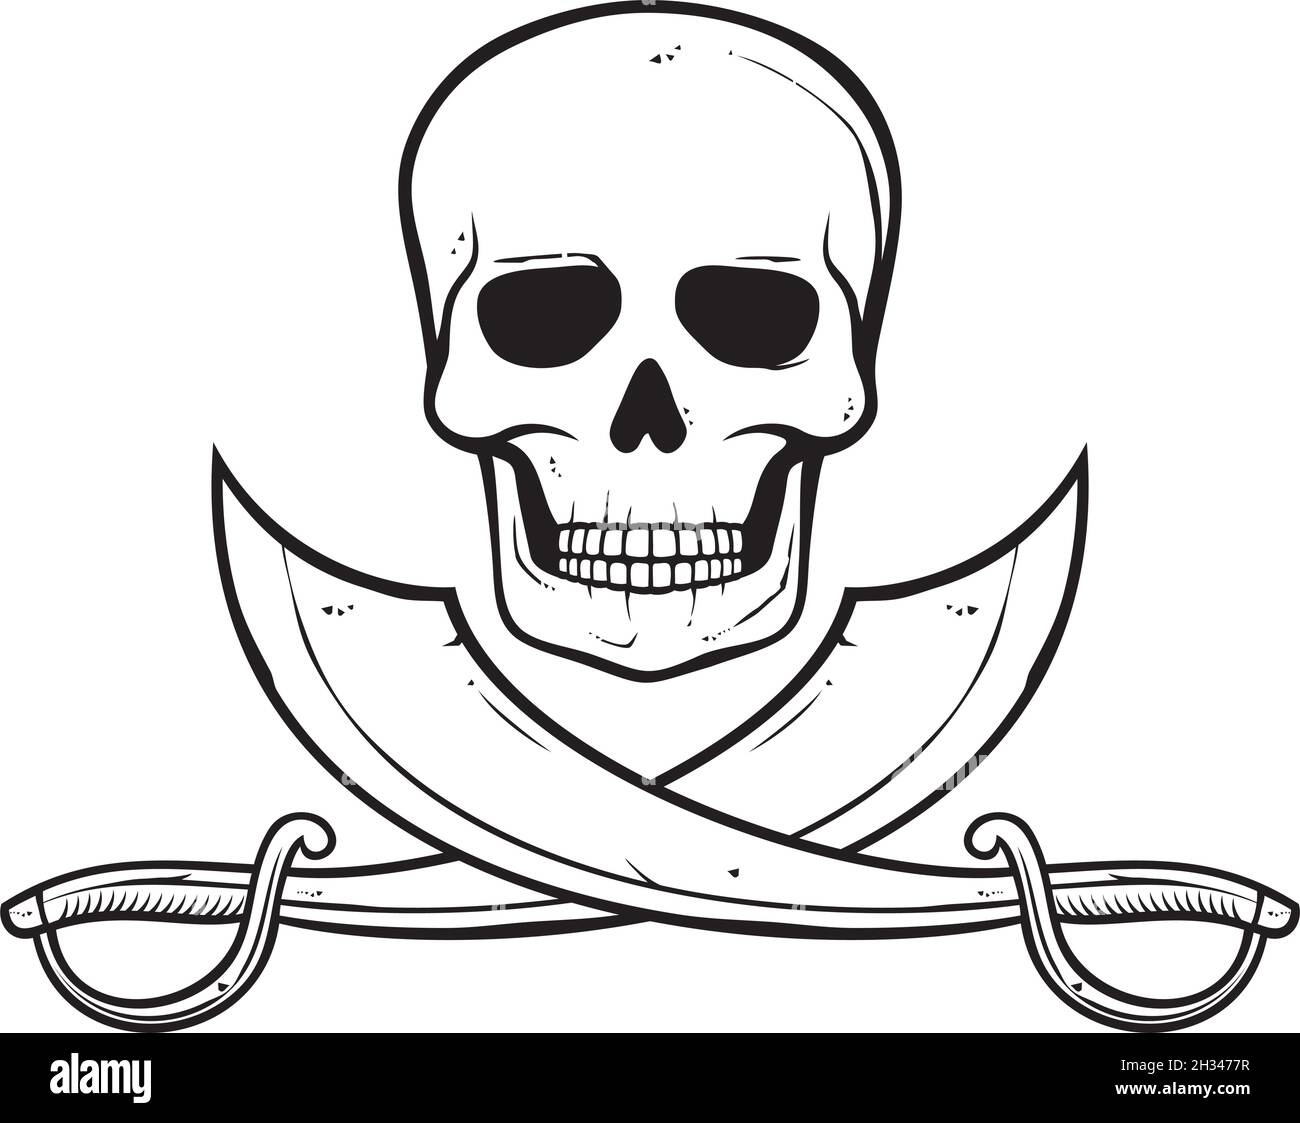 Piraten Schädel und gekreuzte Säbel Vektor-Illustration Stock Vektor